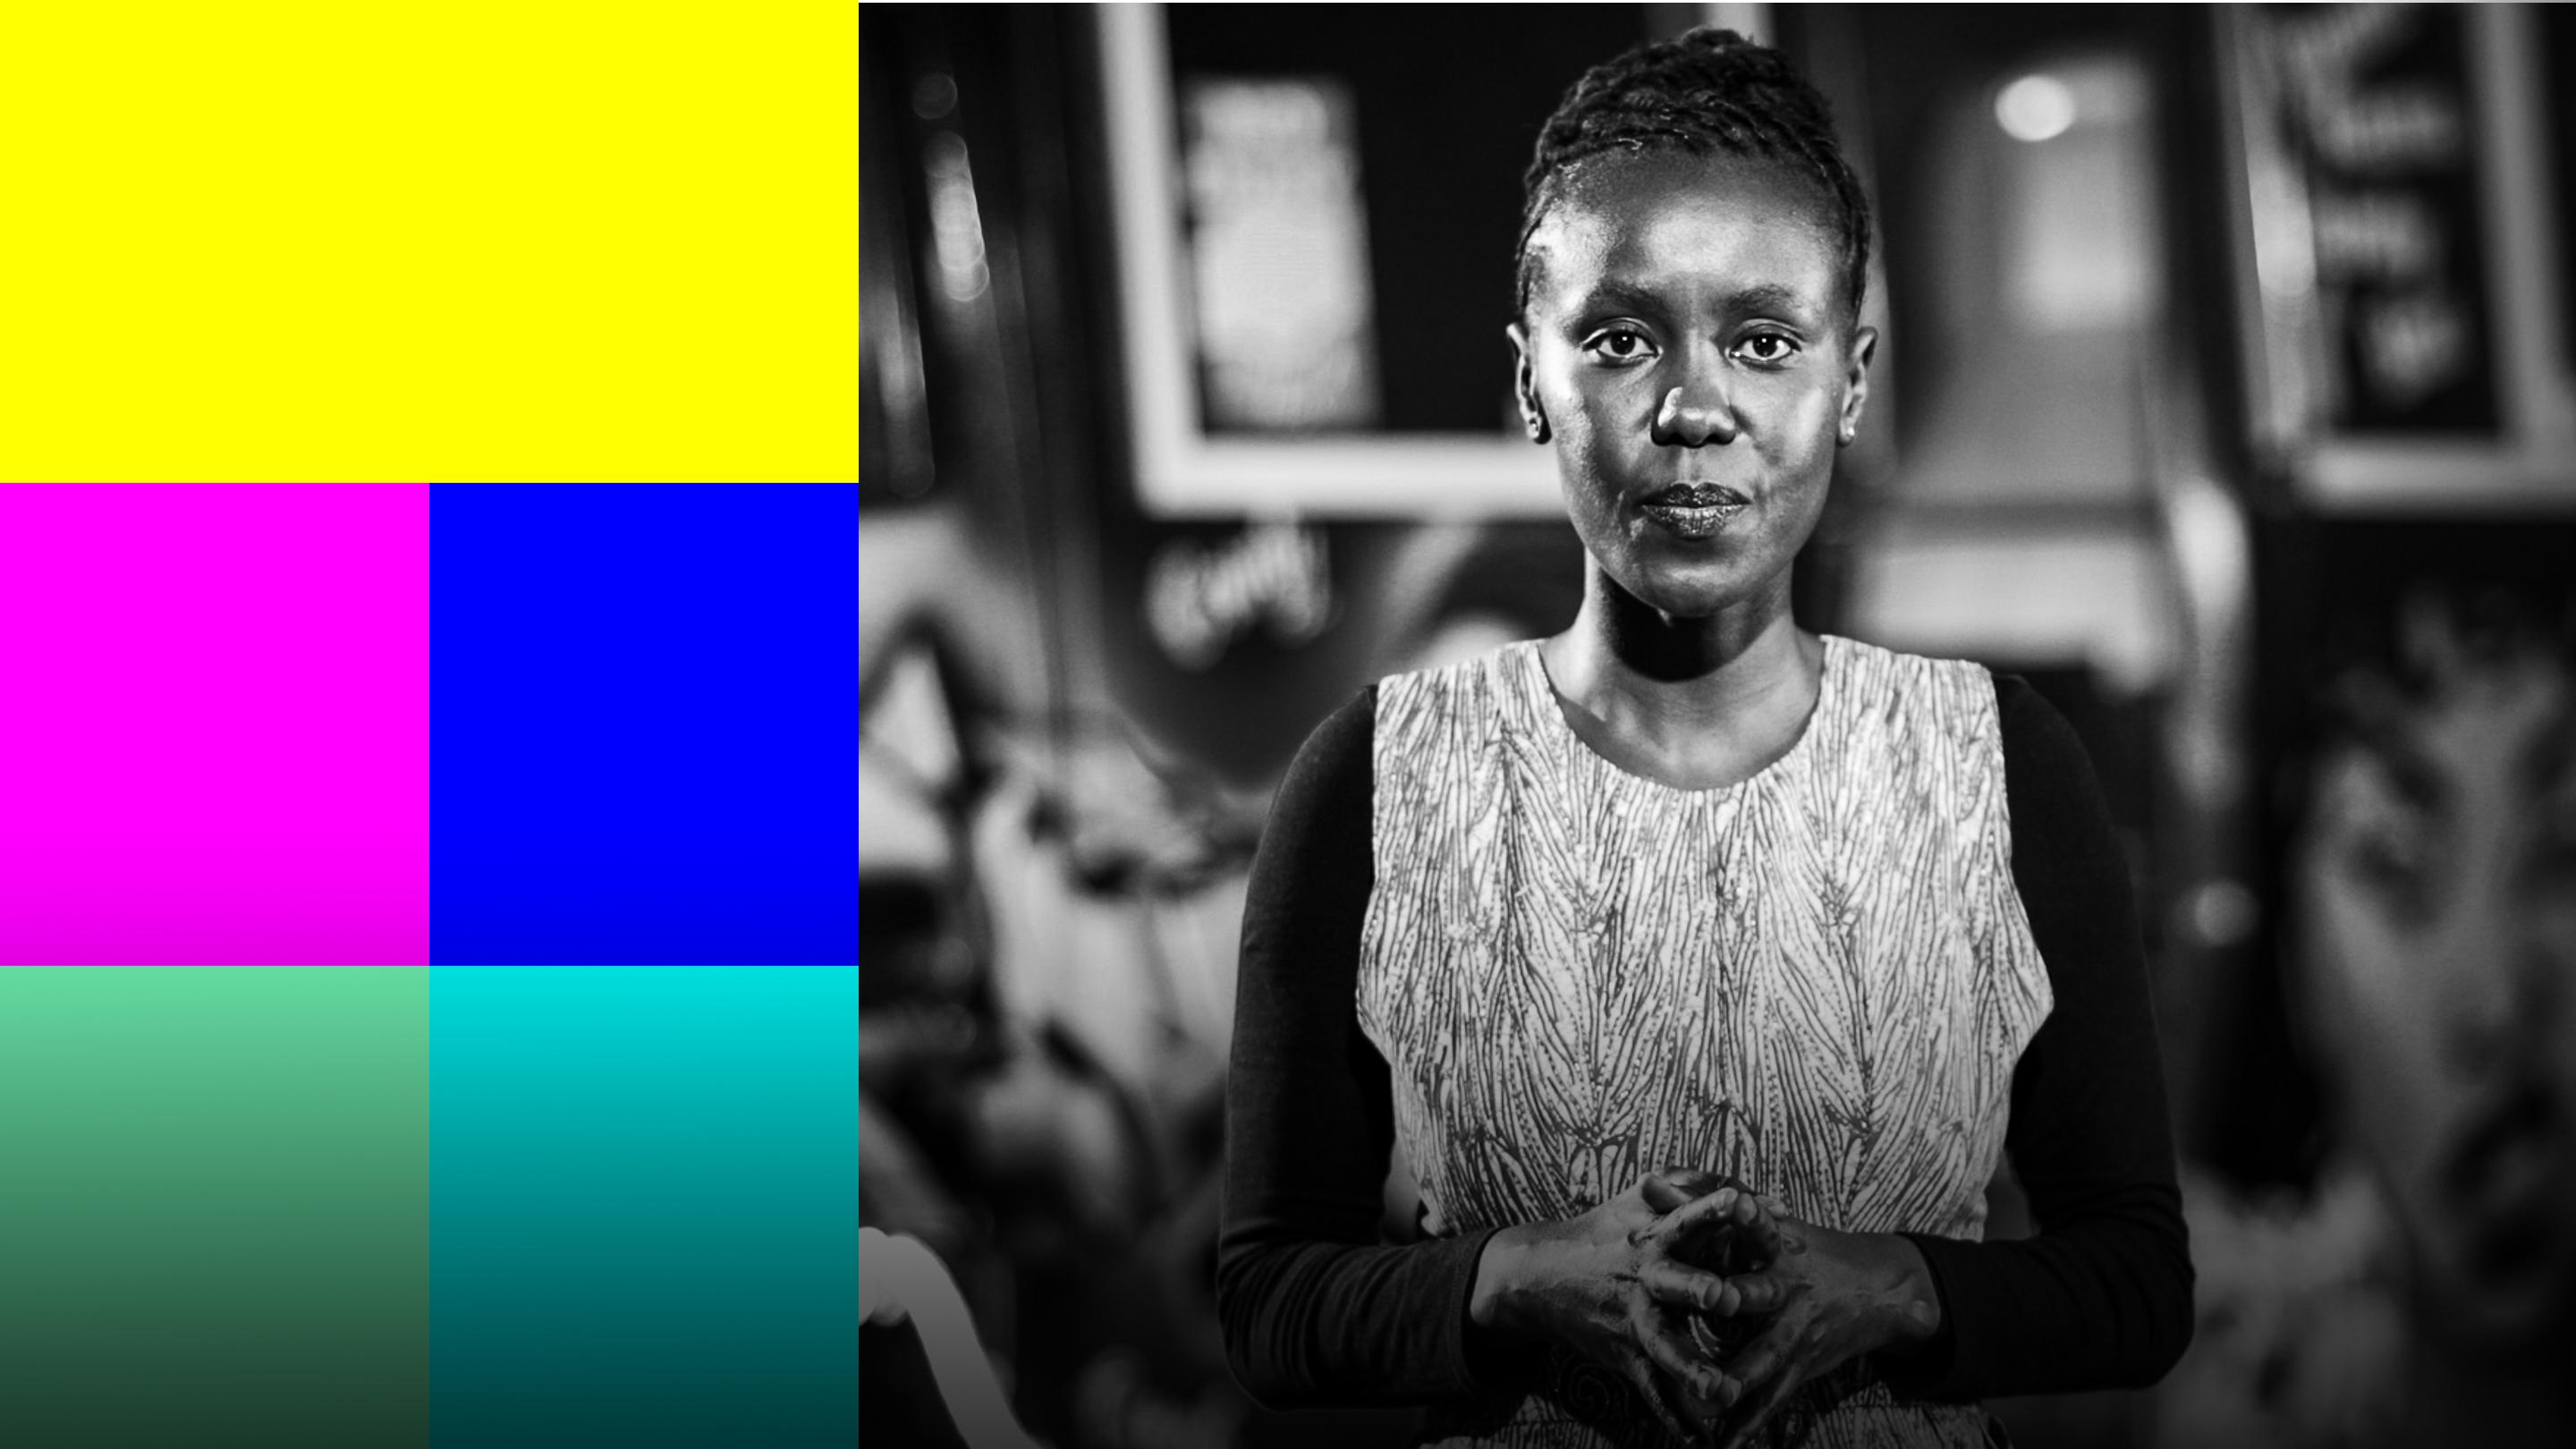 페미니스트 관점으로 새롭게 바라본 케냐의 대중교통 | 나오미 므와우라 (Naomi Mwaura)